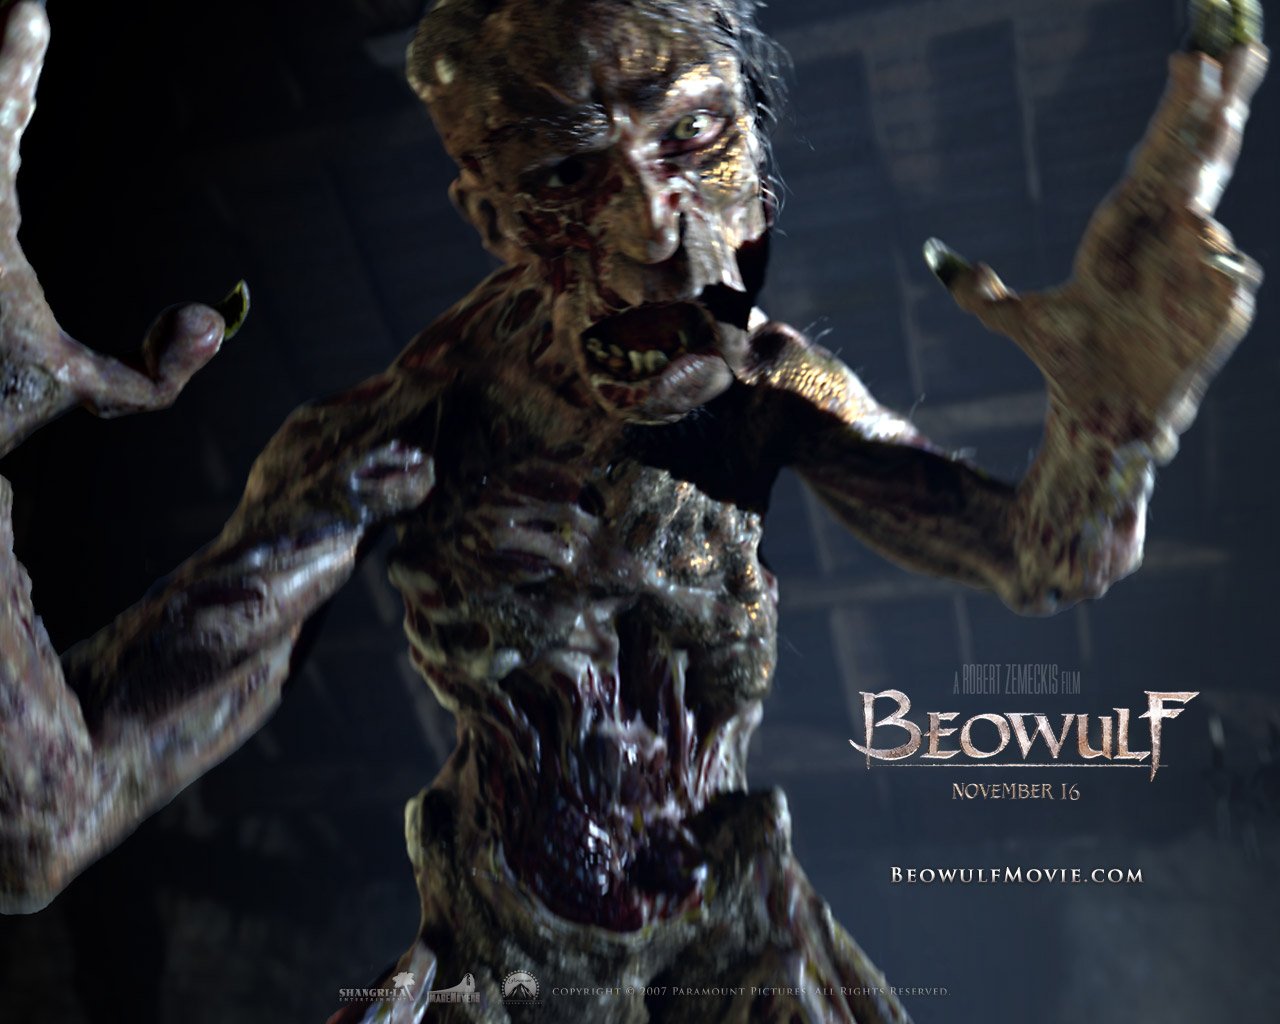 Melhores papéis de parede de Beowulf (2007) para tela do telefone